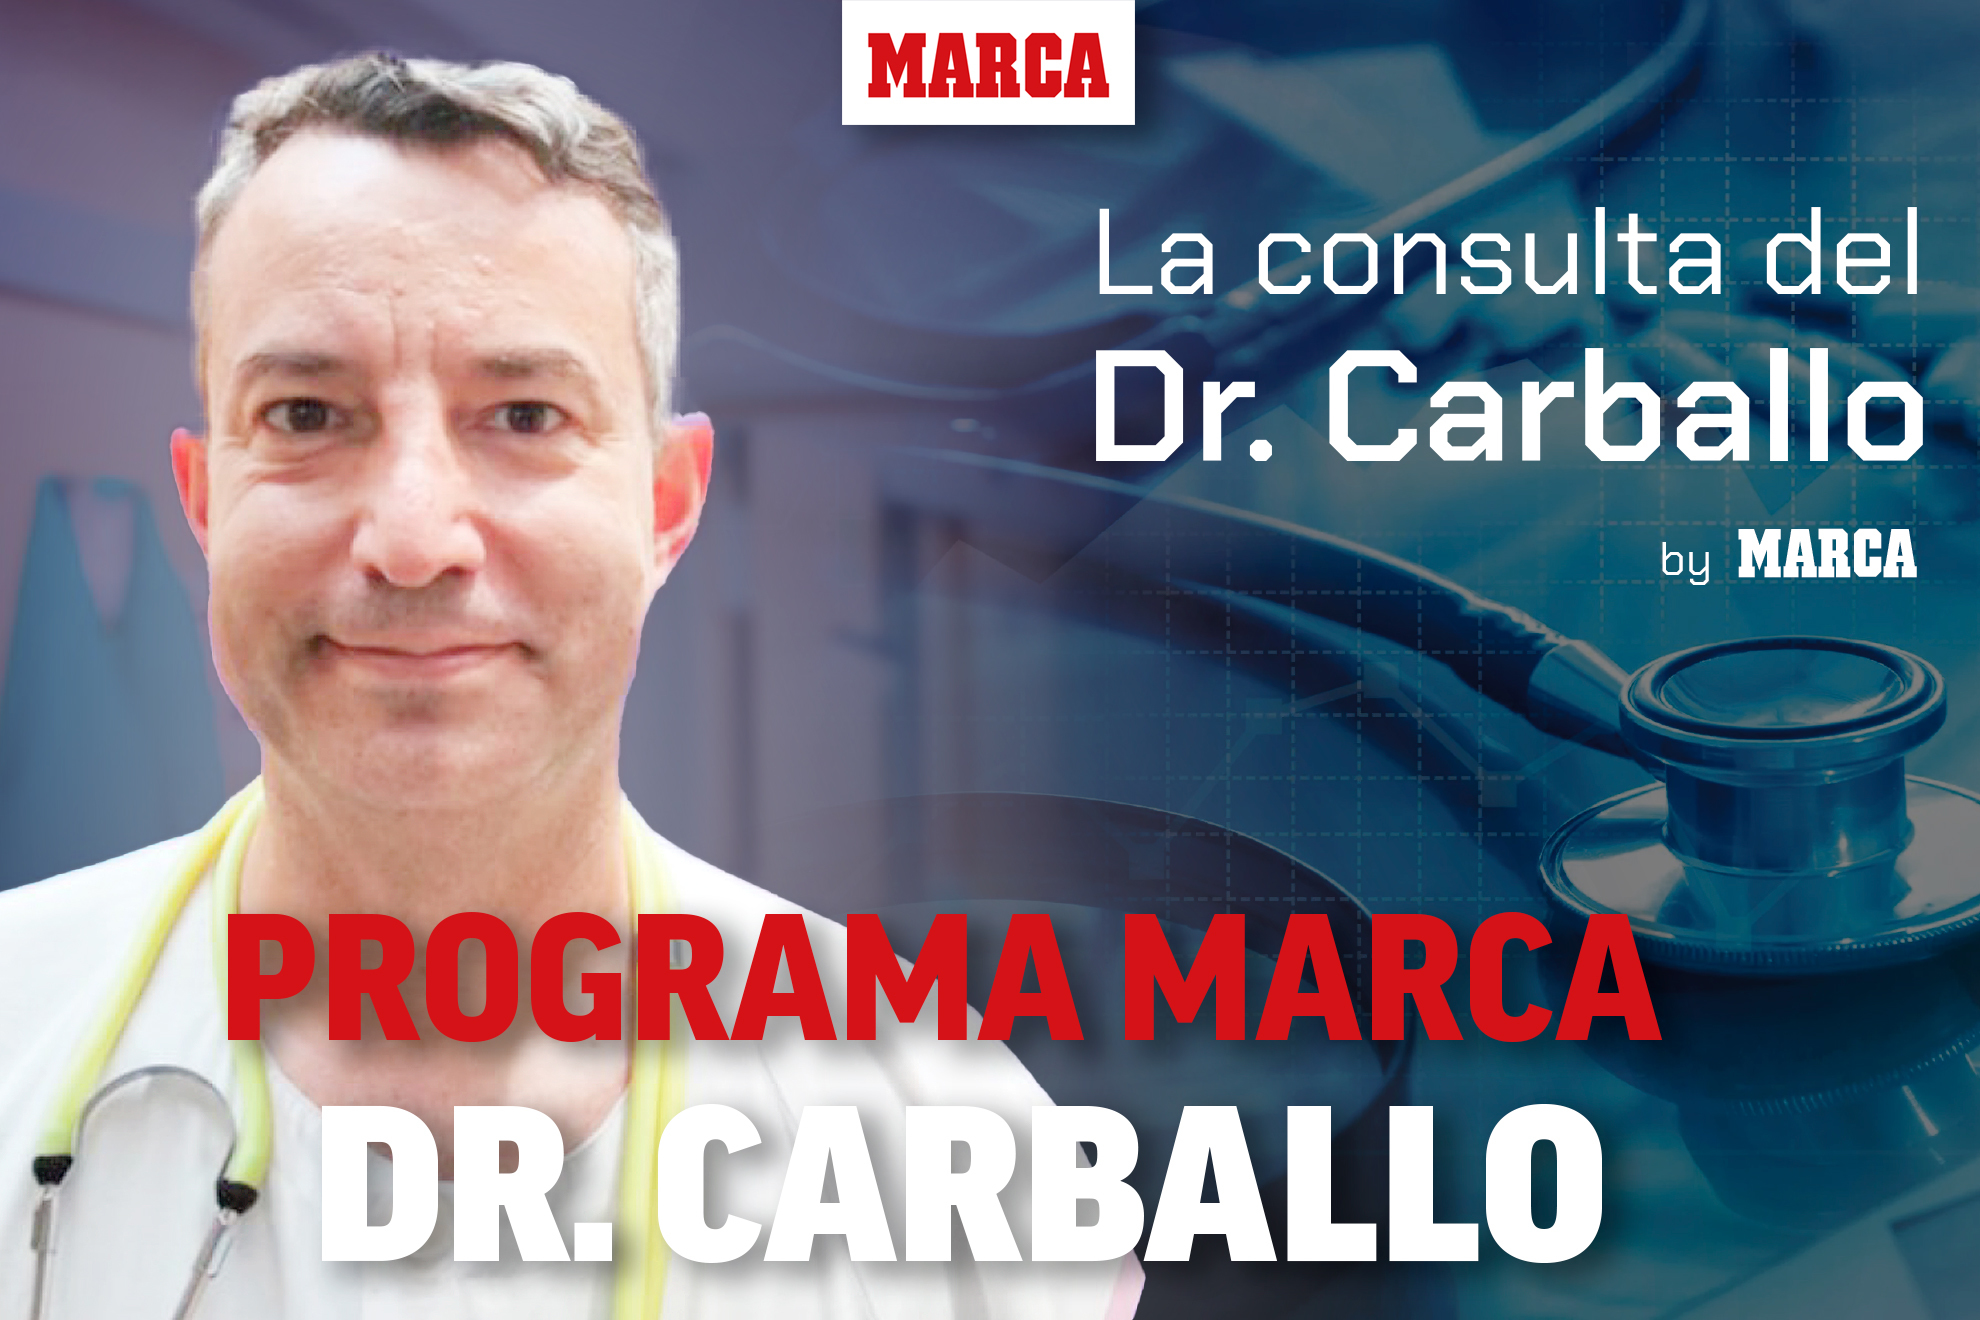 Margarita del Val, con el doctor Carballo: "El que est vacunado no puede exponerse a todo"